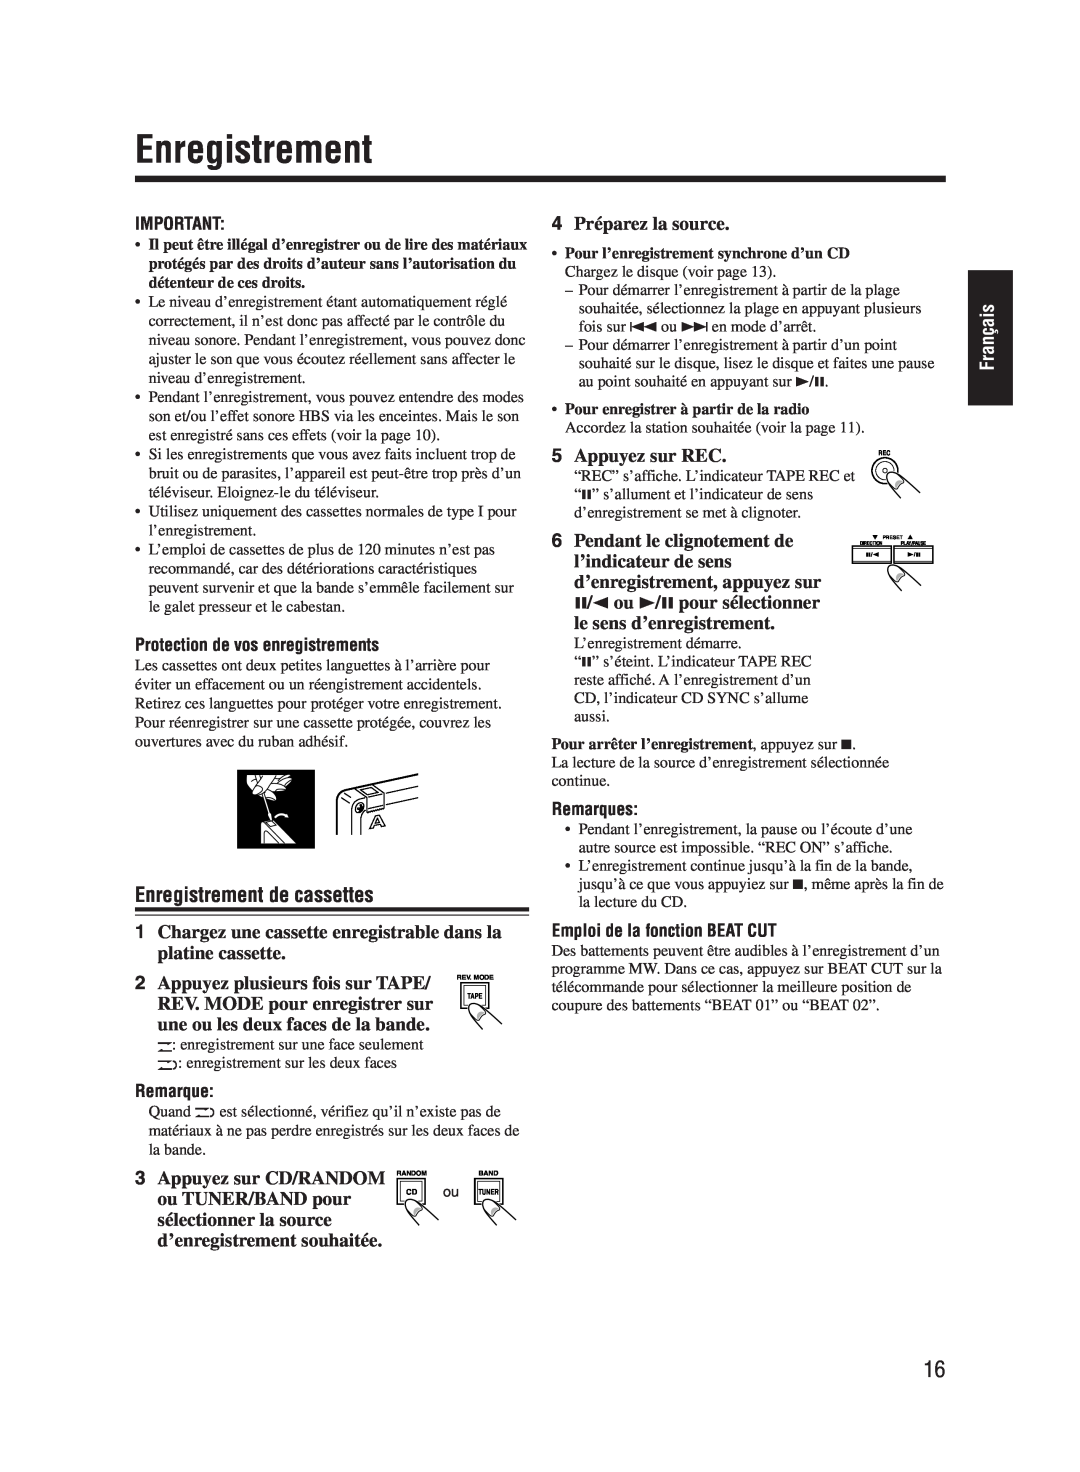 JVC UX-M55 manual Enregistrement de cassettes, Français 